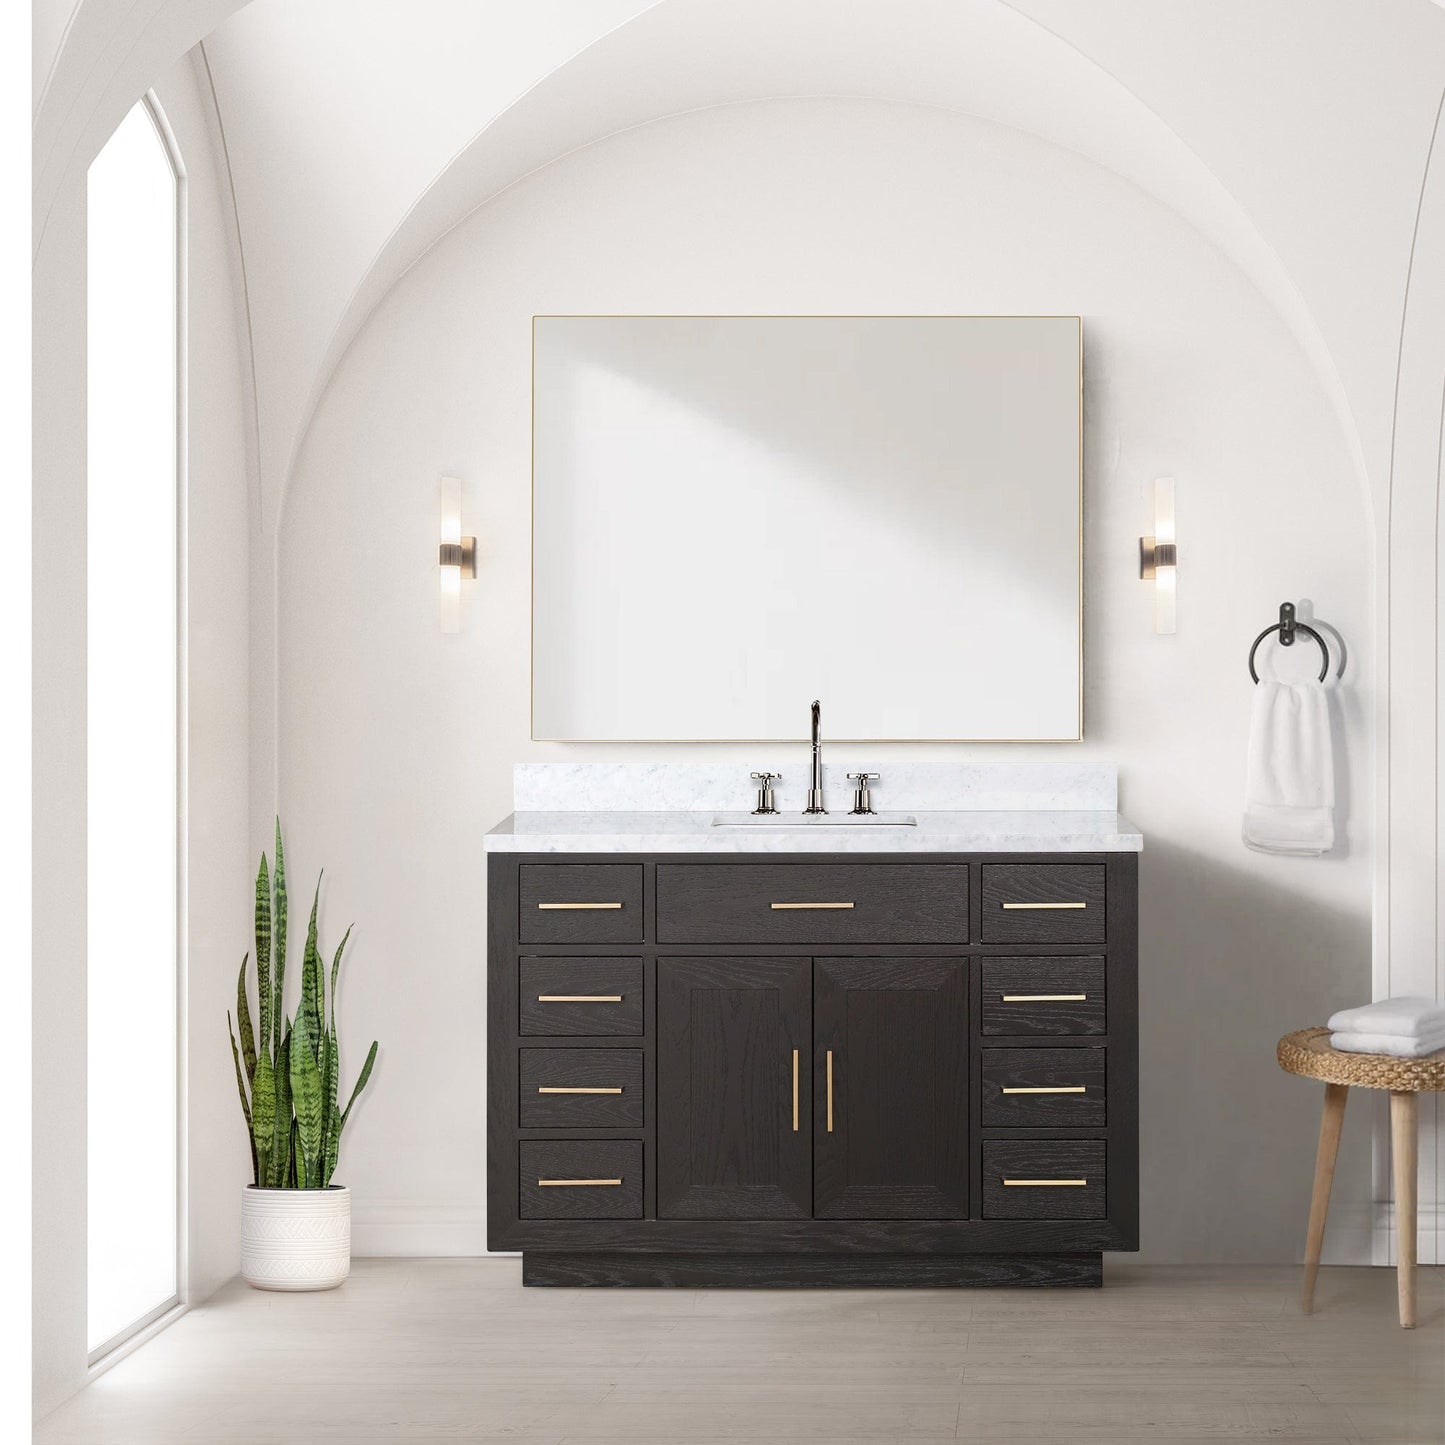 Lexora Bathroom Vanity Brown Oak / No Faucet / No Mirror Abbey 48" x 22" Single Bath Vanity